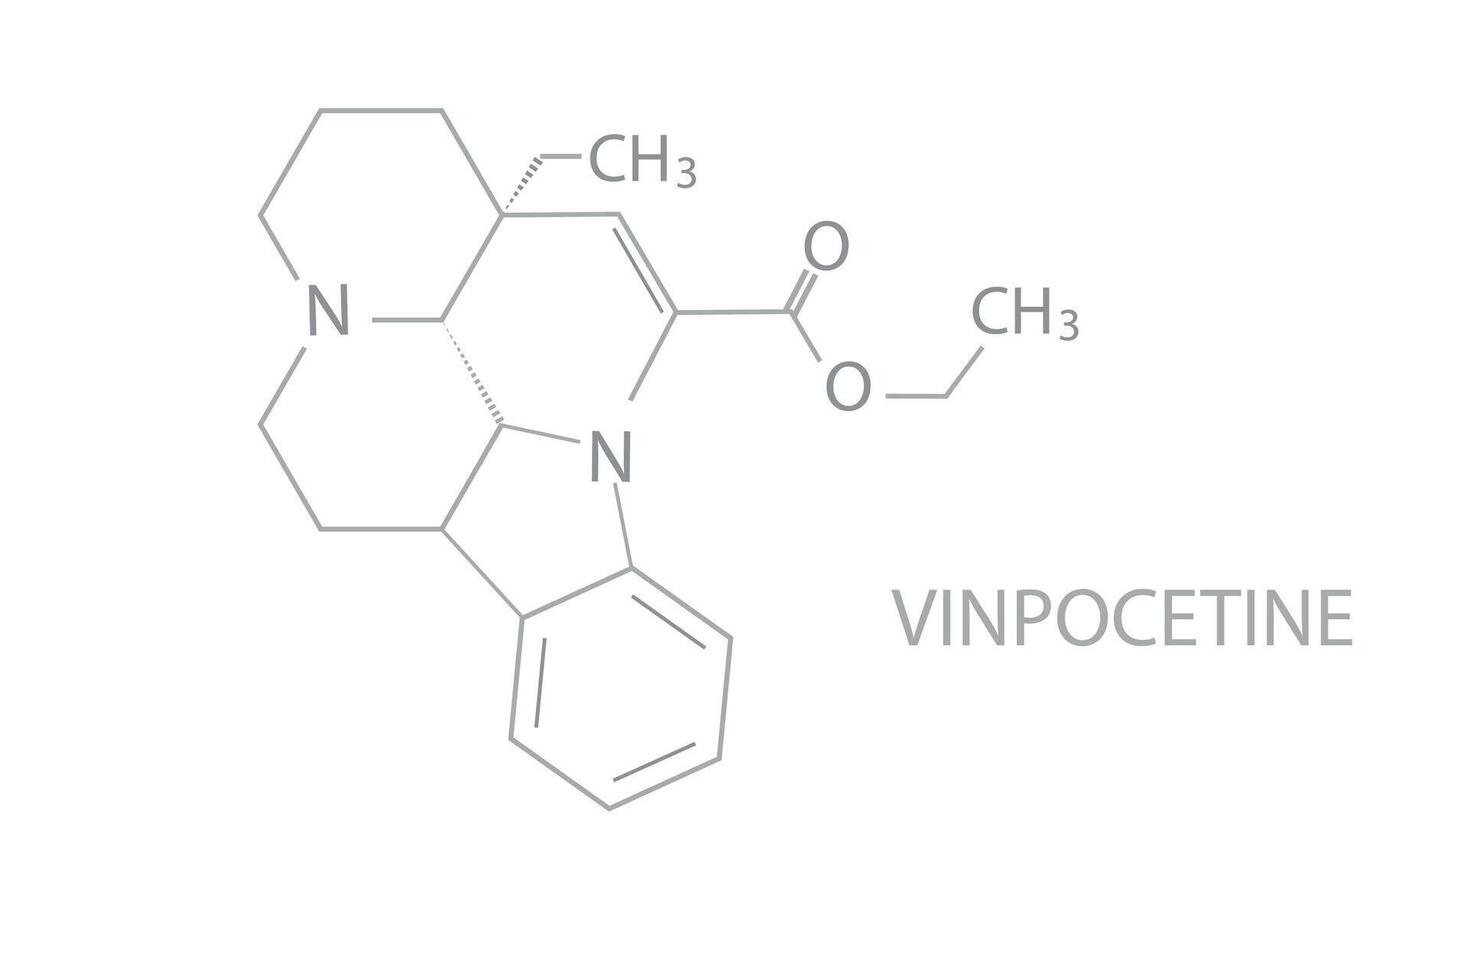 vinpocetine molecular skeletal chemical formula vector